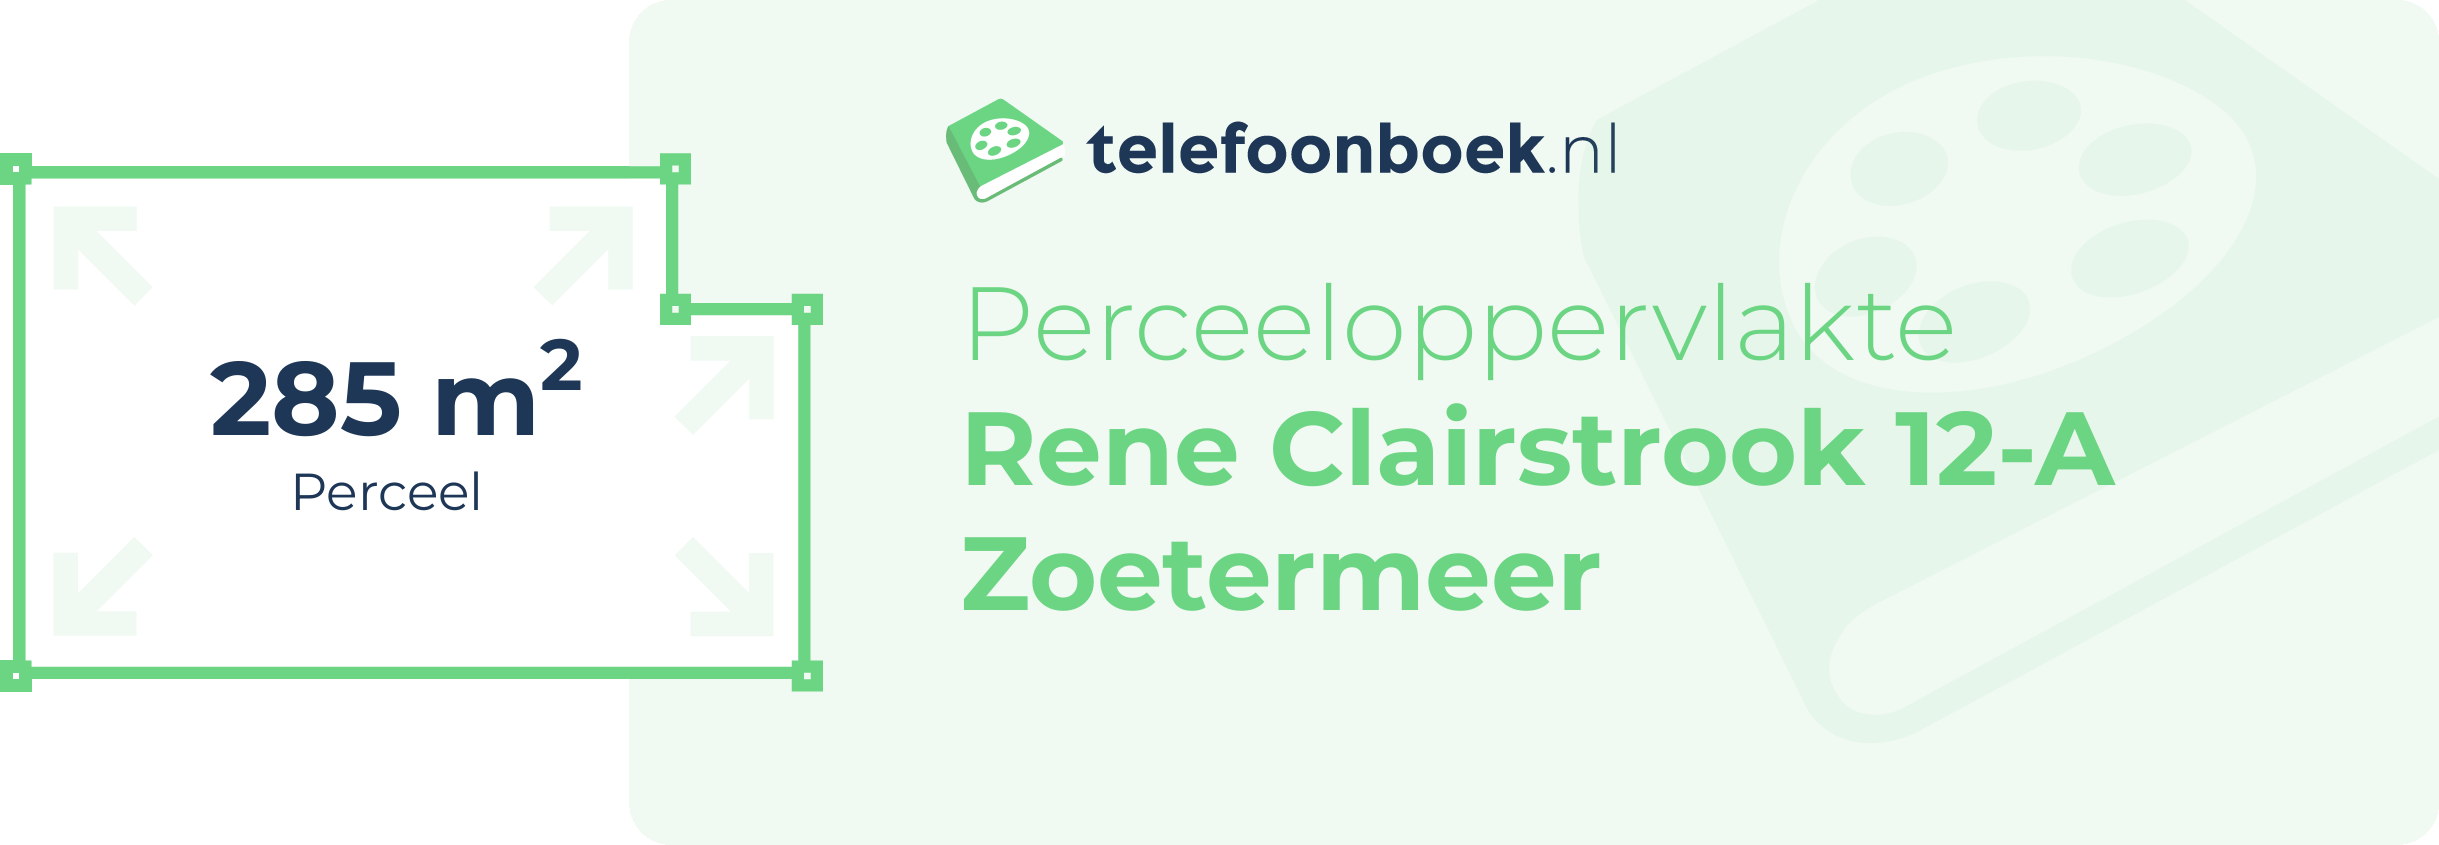 Perceeloppervlakte Rene Clairstrook 12-A Zoetermeer